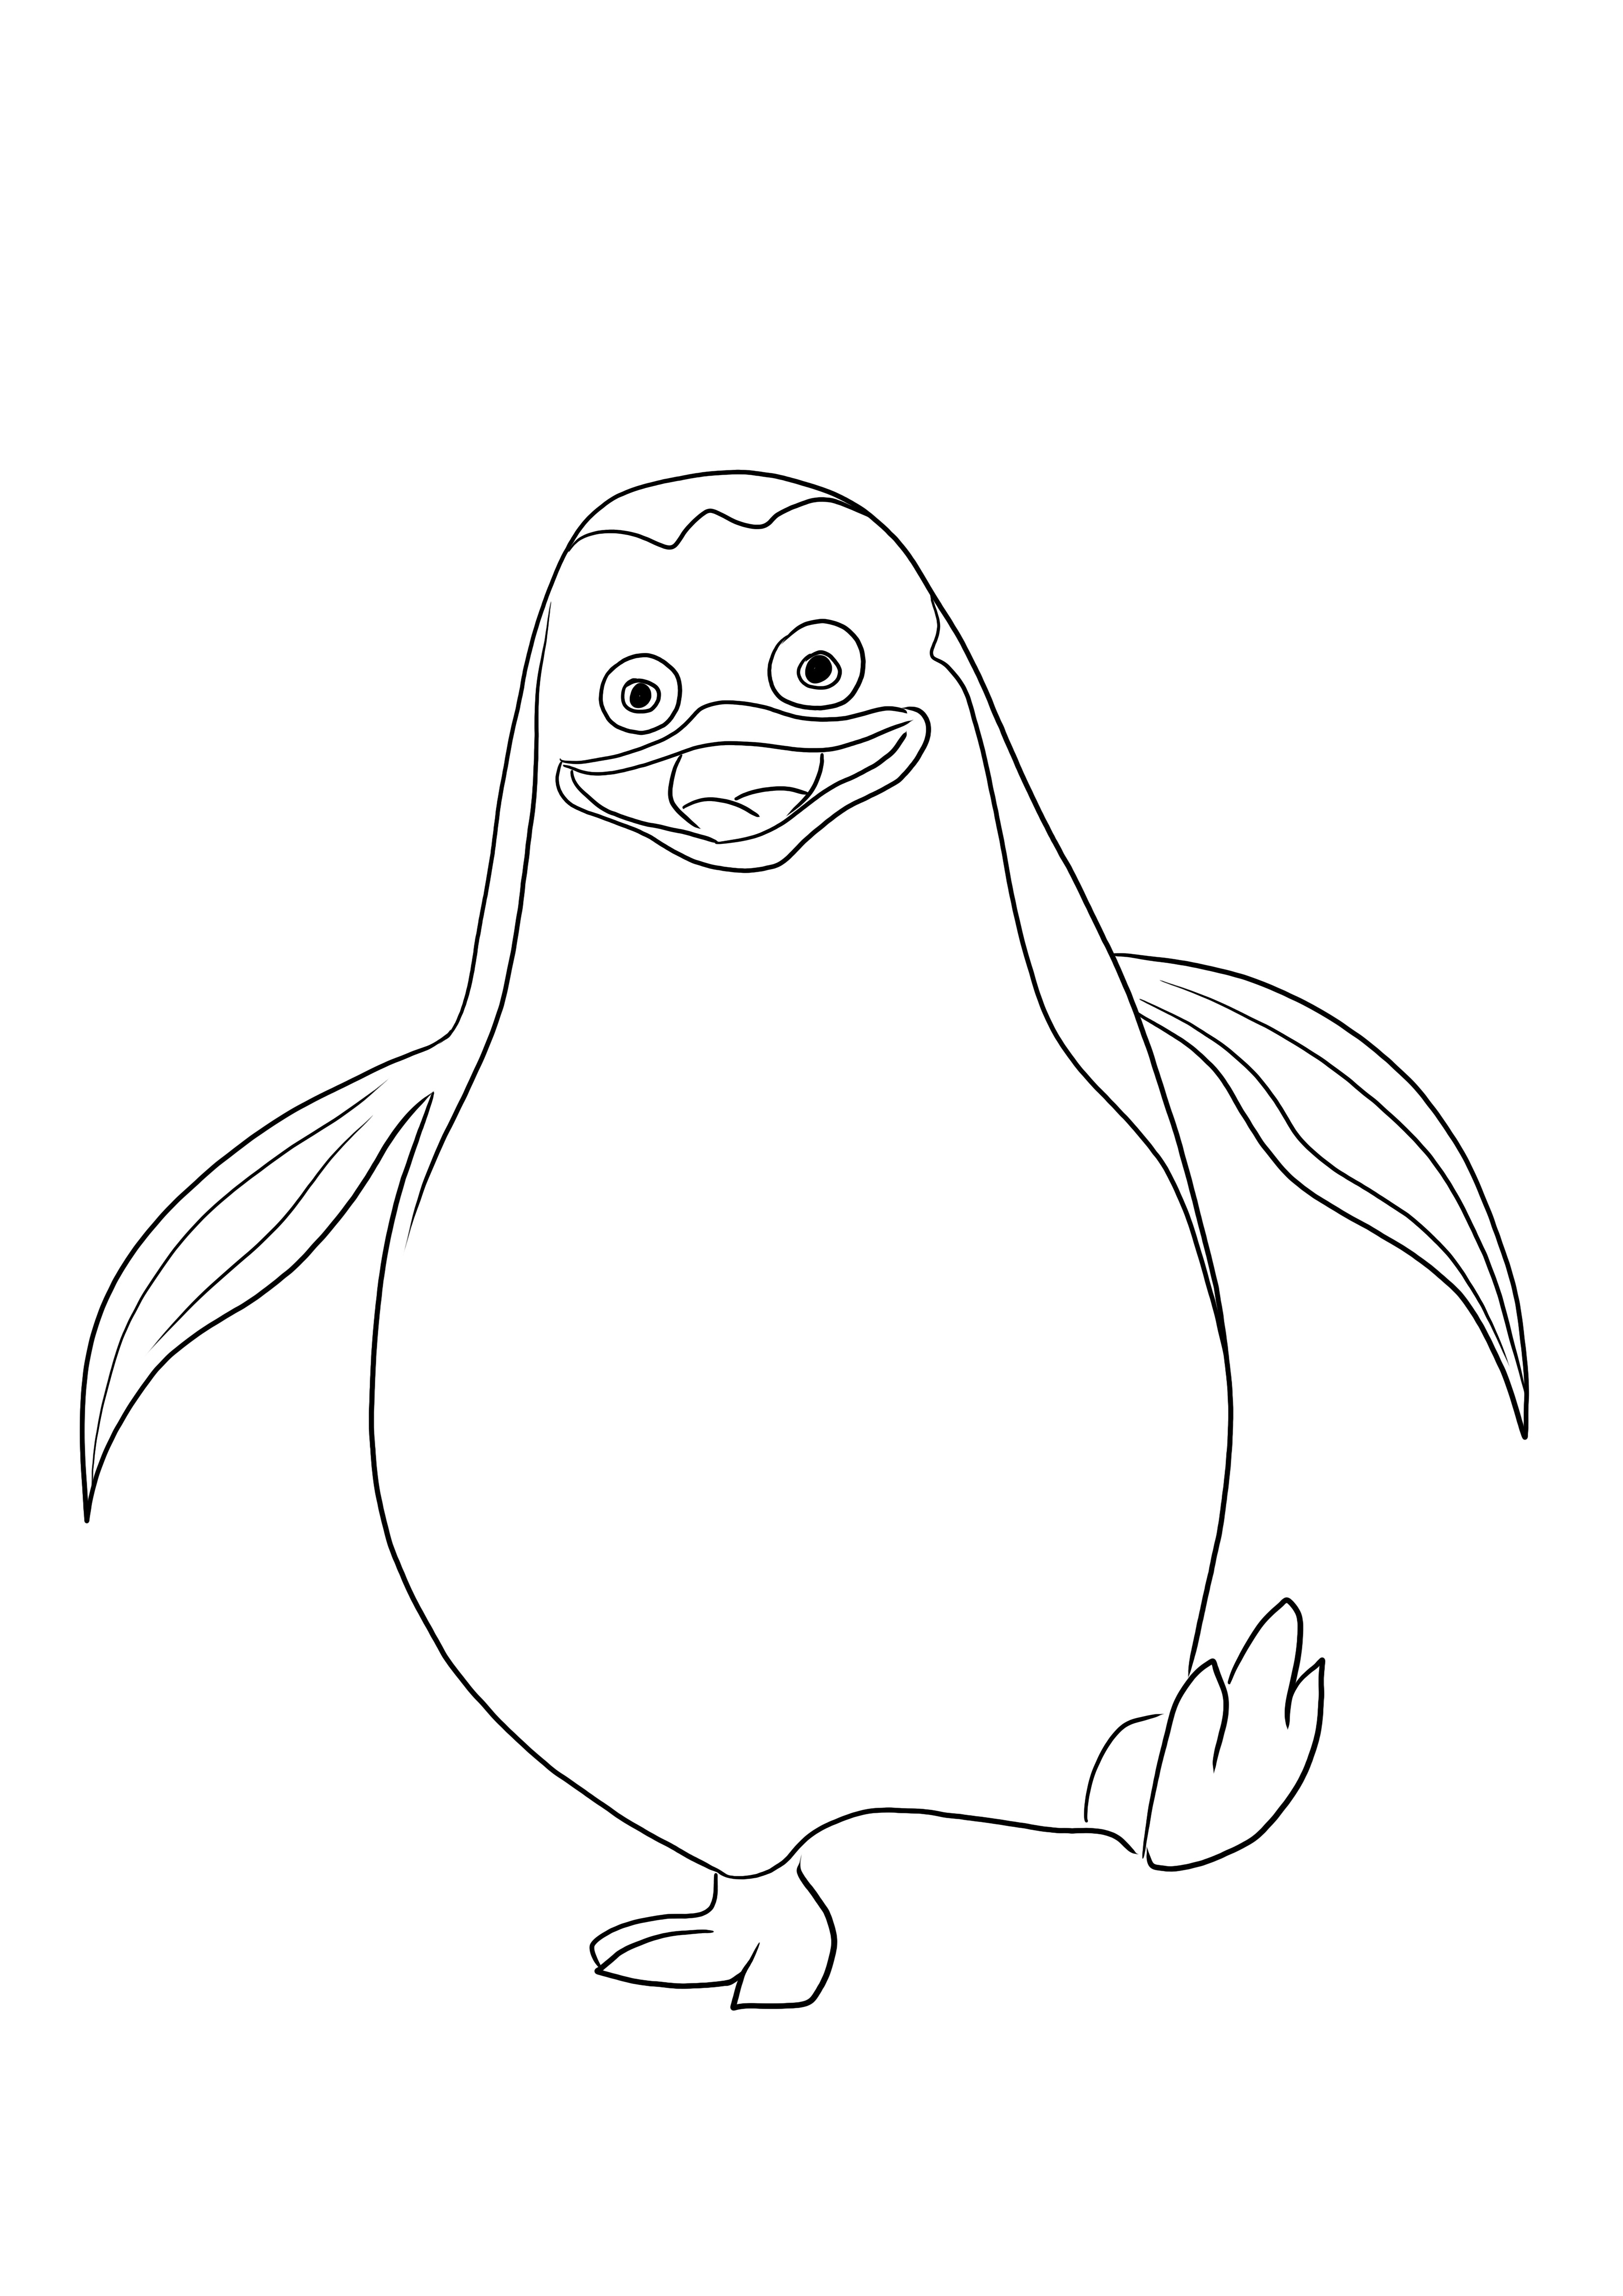 O imagine ușor de colorat a pinguinului Private, gata pentru a fi tipărită și colorată